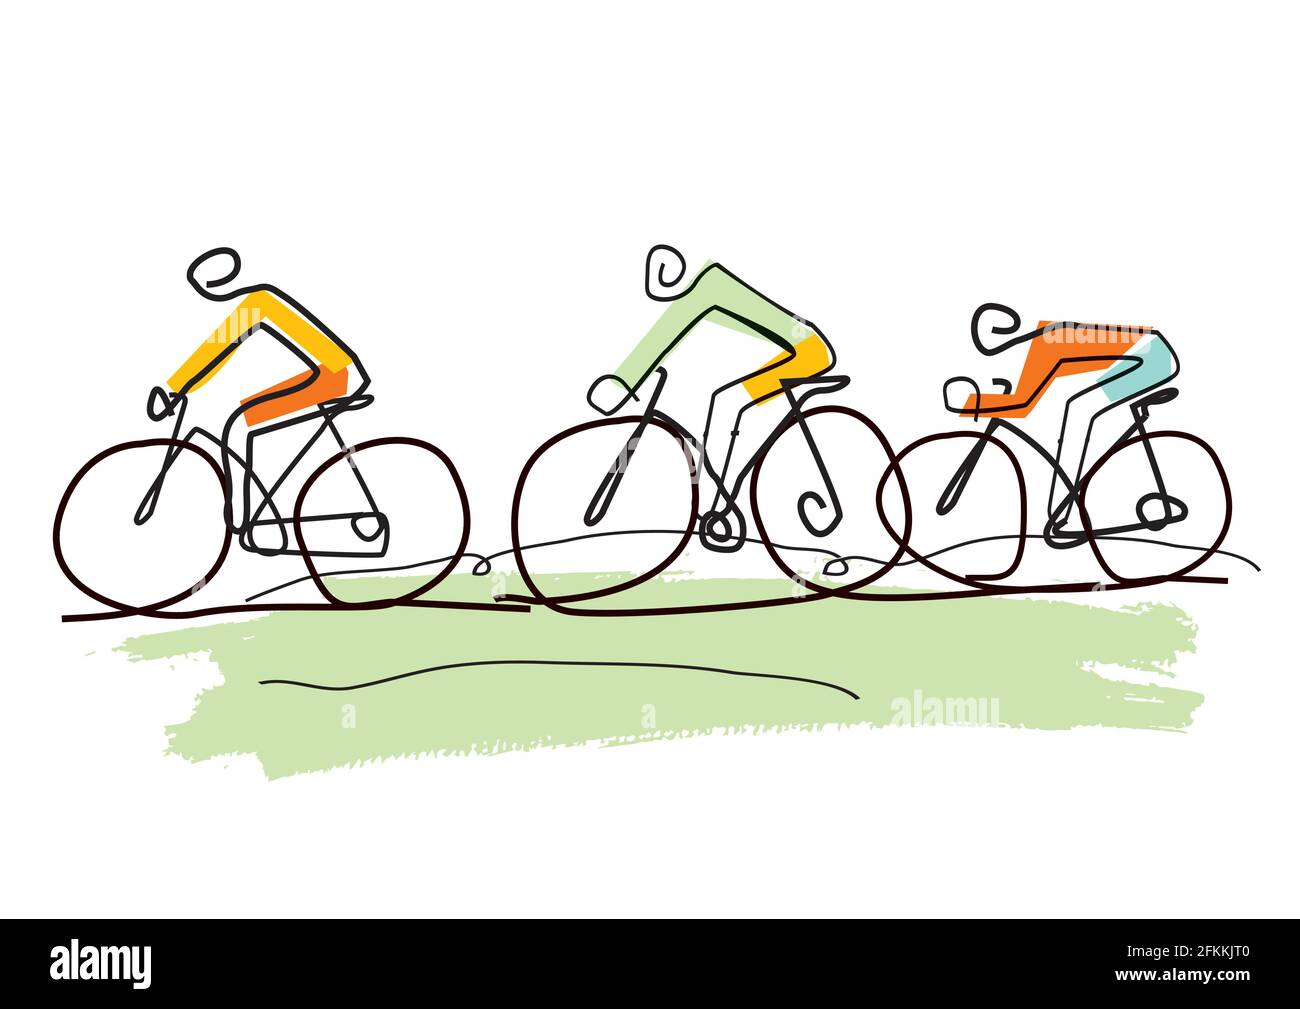 Viaggio in bicicletta, cartoni animati stilizzati line art. Disegno  stilizzato di tre ciclisti in un paesaggio astratto. Vettore disponibile  Immagine e Vettoriale - Alamy